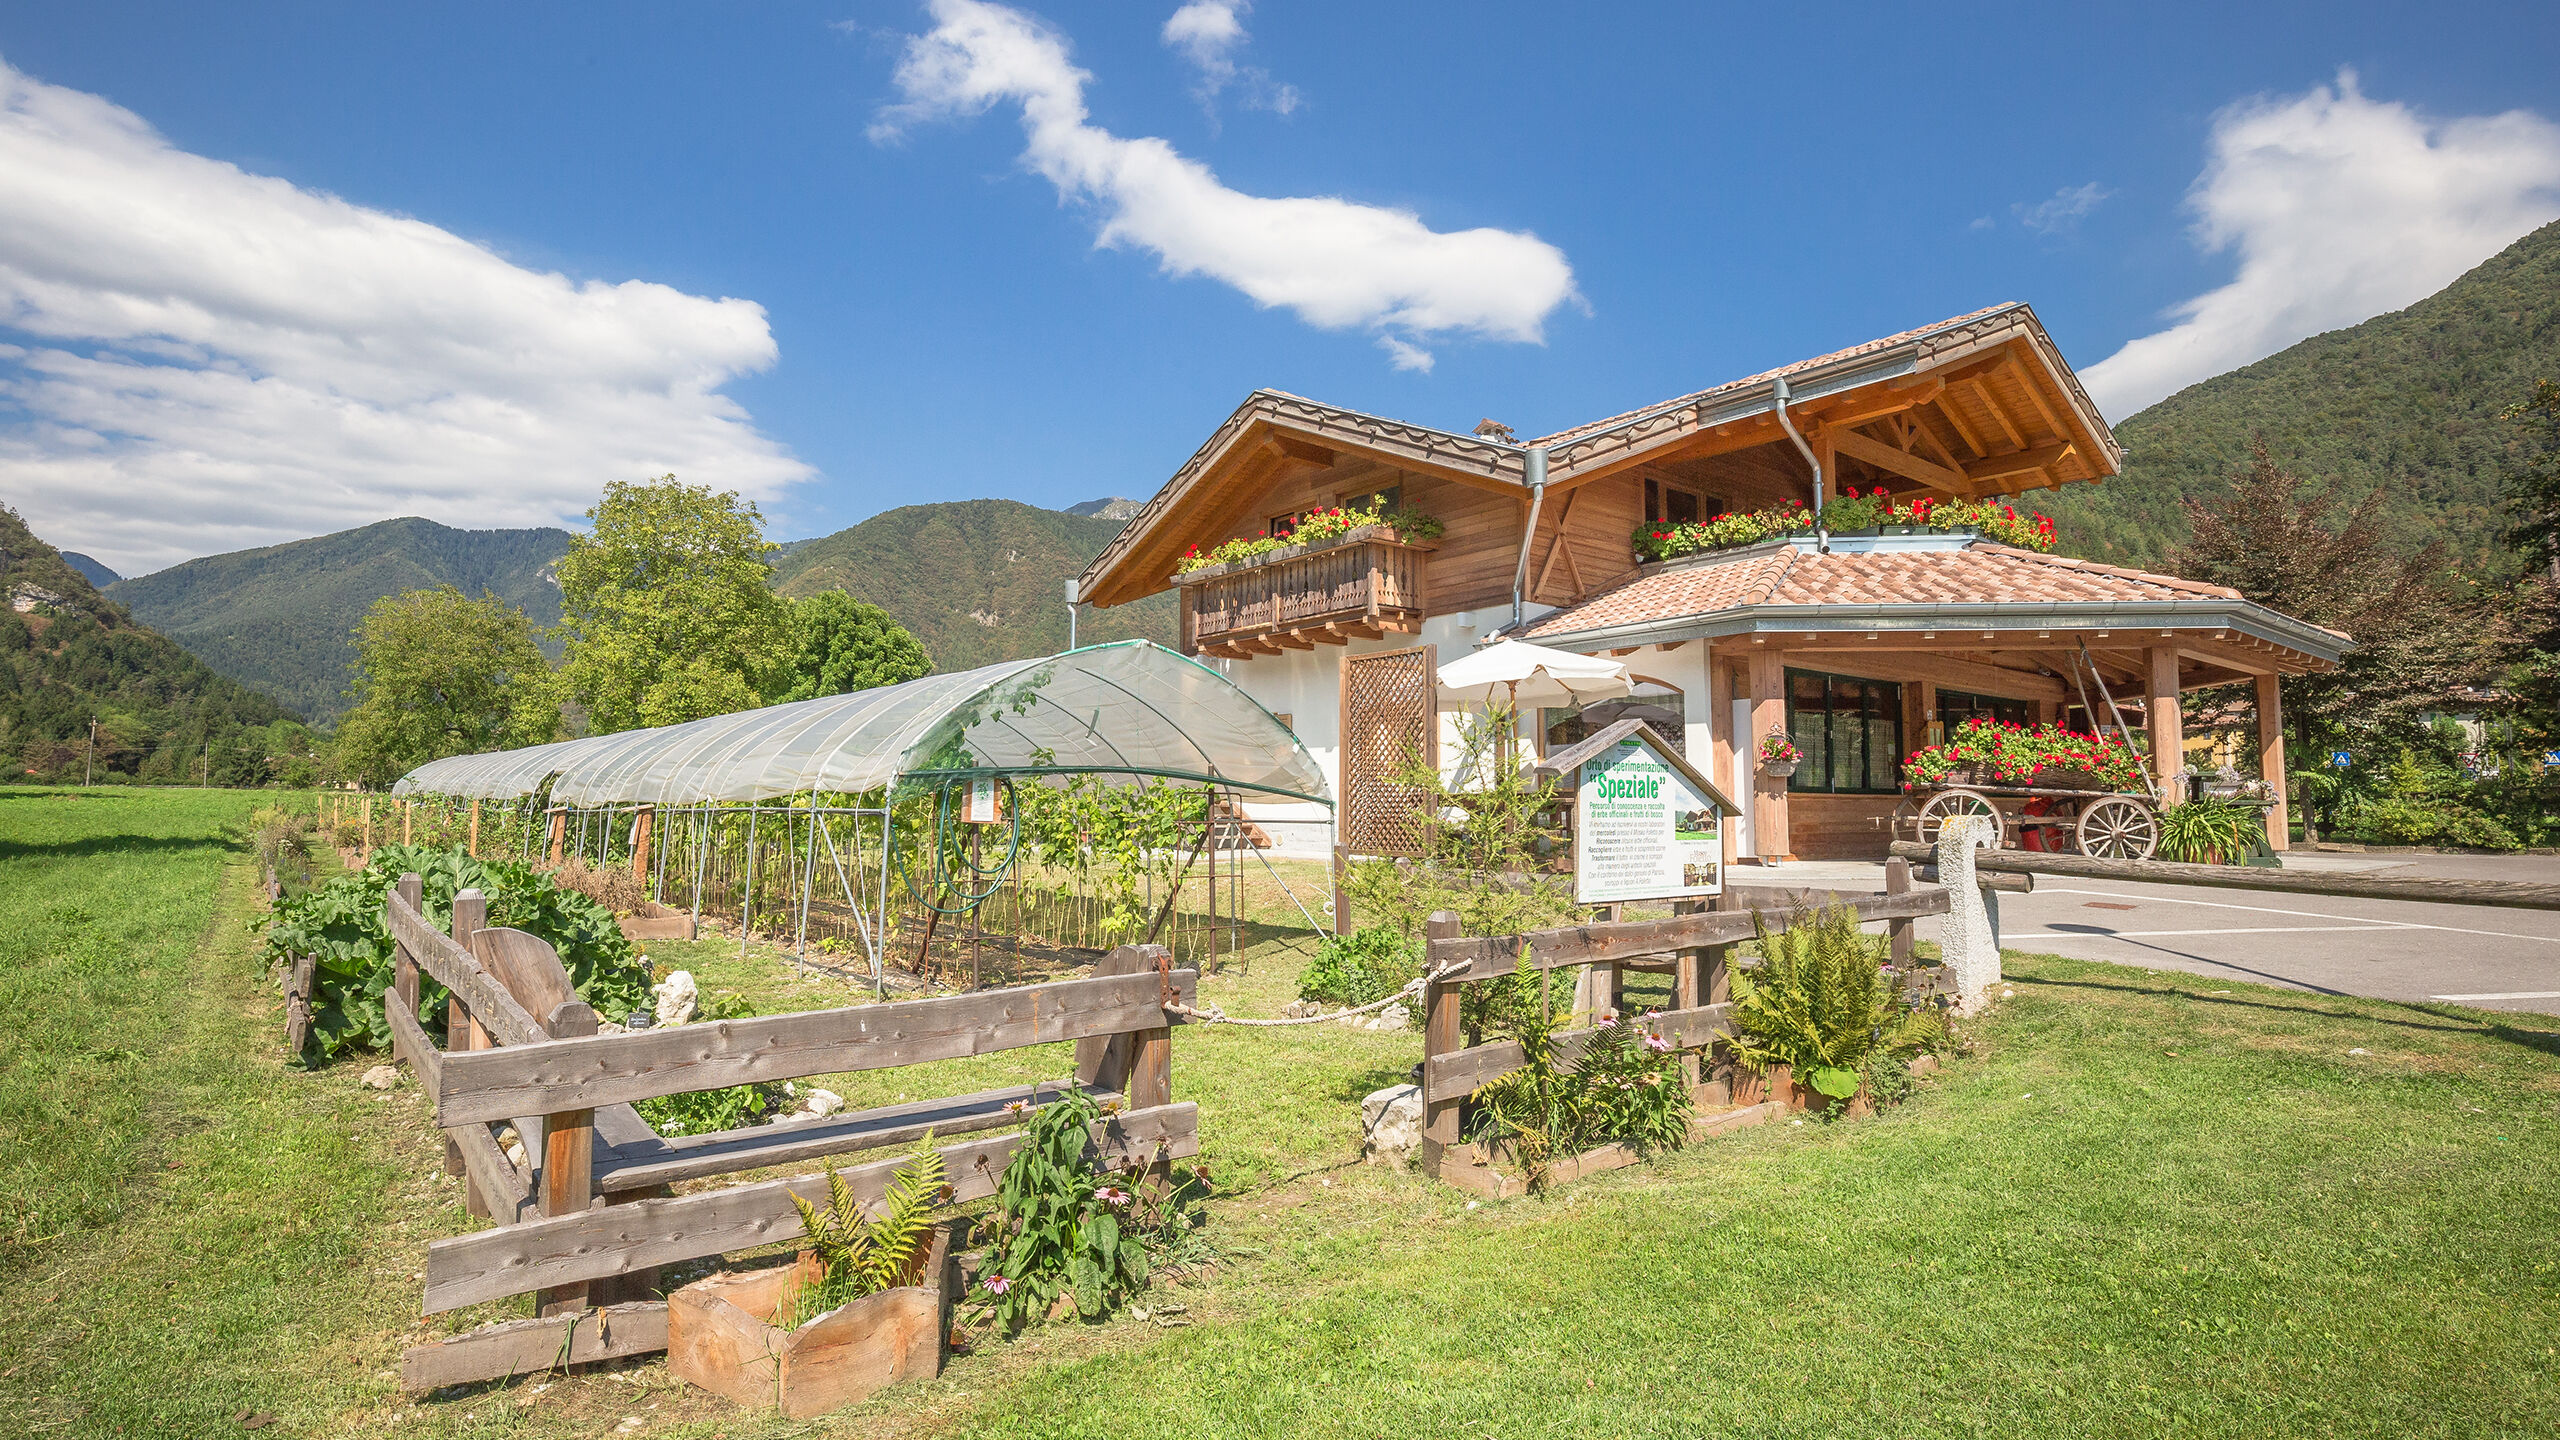 Crosina Holiday - appartamenti vicino al Lago di Ledro in Trentino per una vacanza in coppia o in famiglia  Benvenuti al B&B Fattoria della Patty